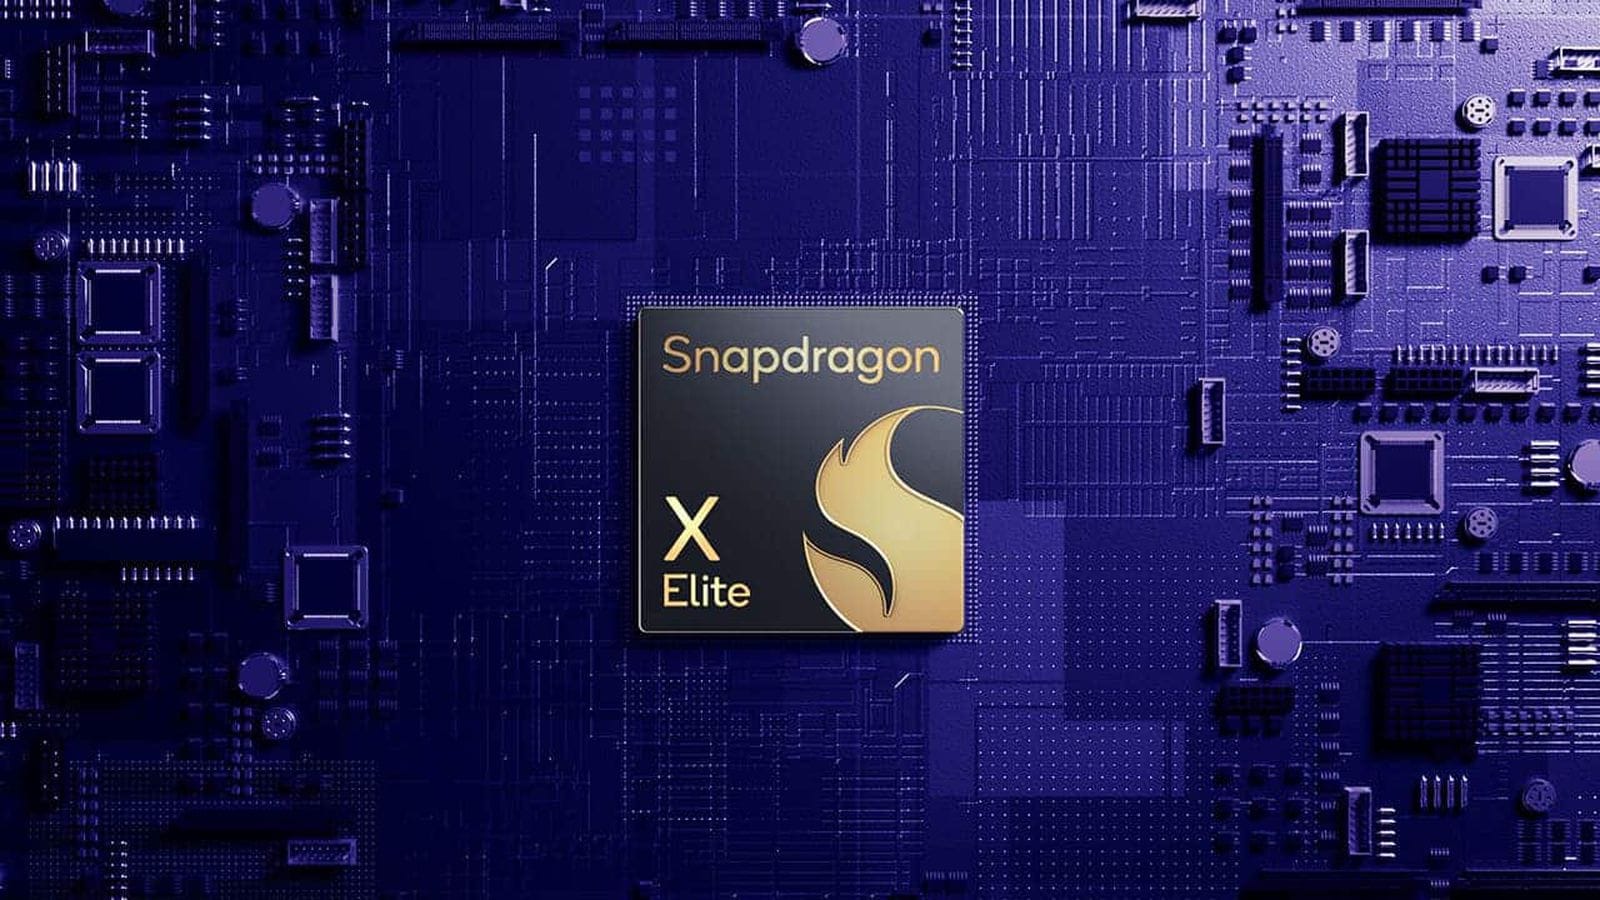 Qualcomm утверждает, что её Snapdragon X Elite на 21% быстрее, чем чип M3 от Apple